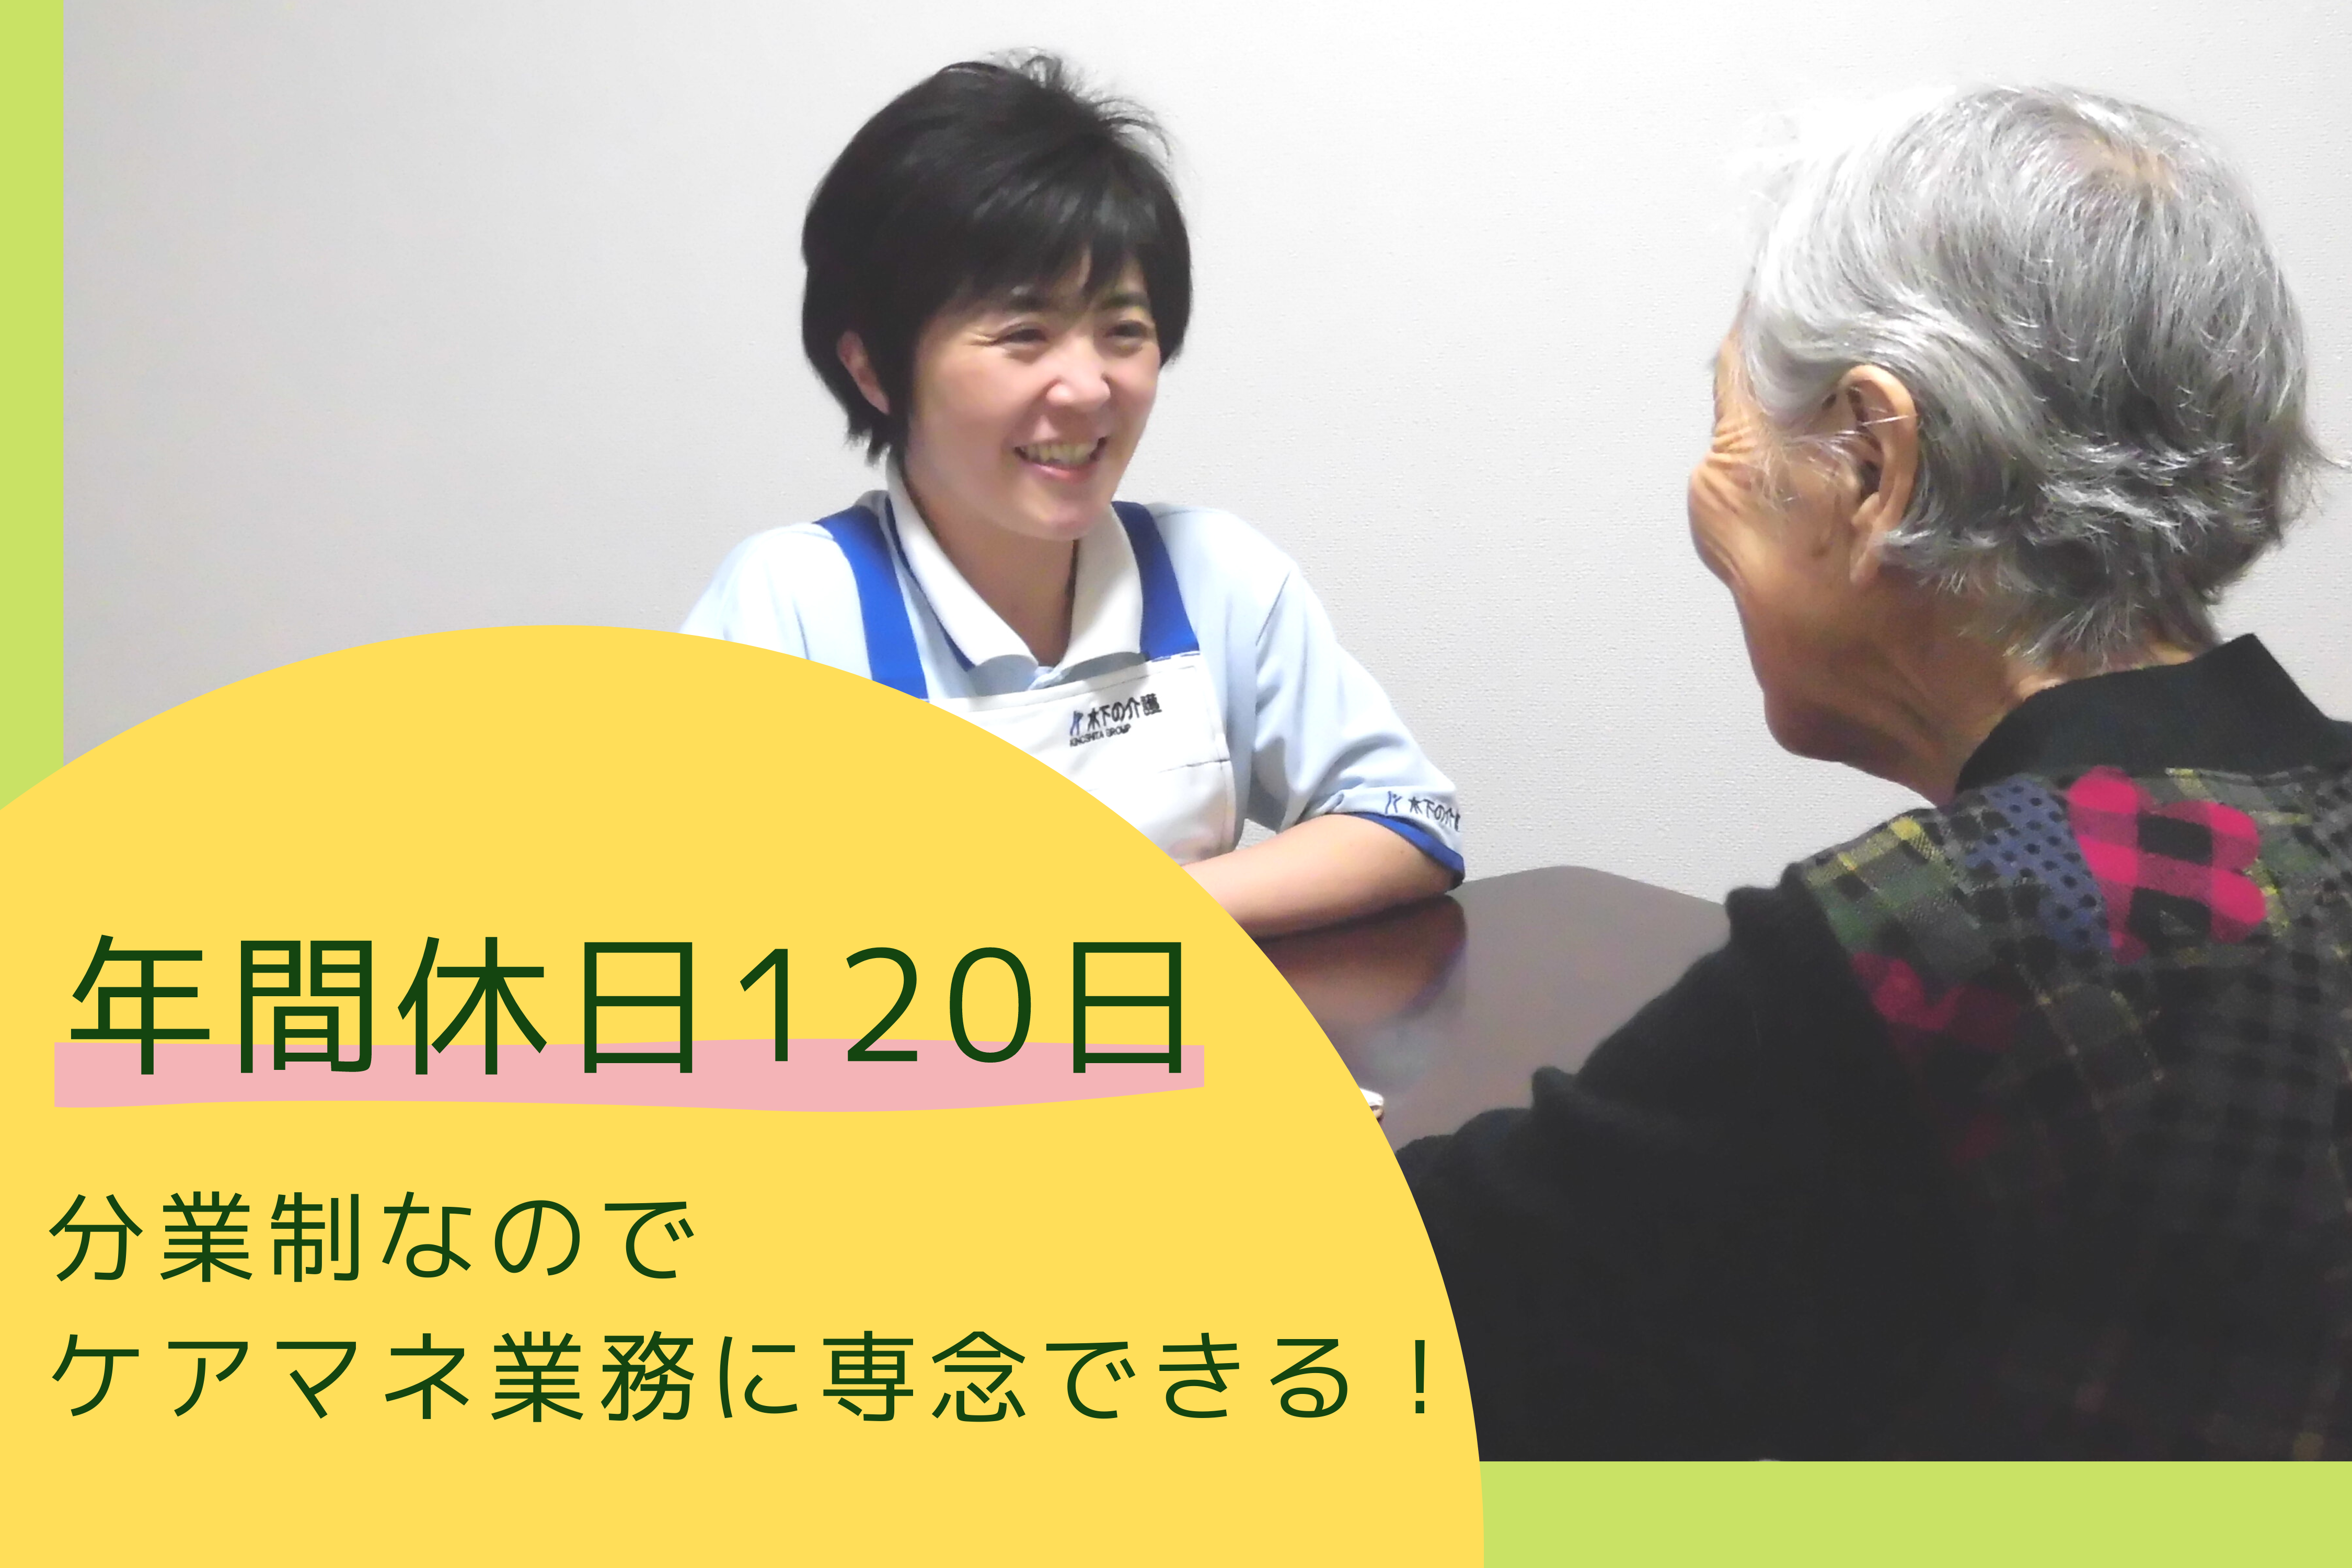 ☆2022年8月OPEN☆ 介護付有料老人ホームでのケアマネジャーを募集しております。☆